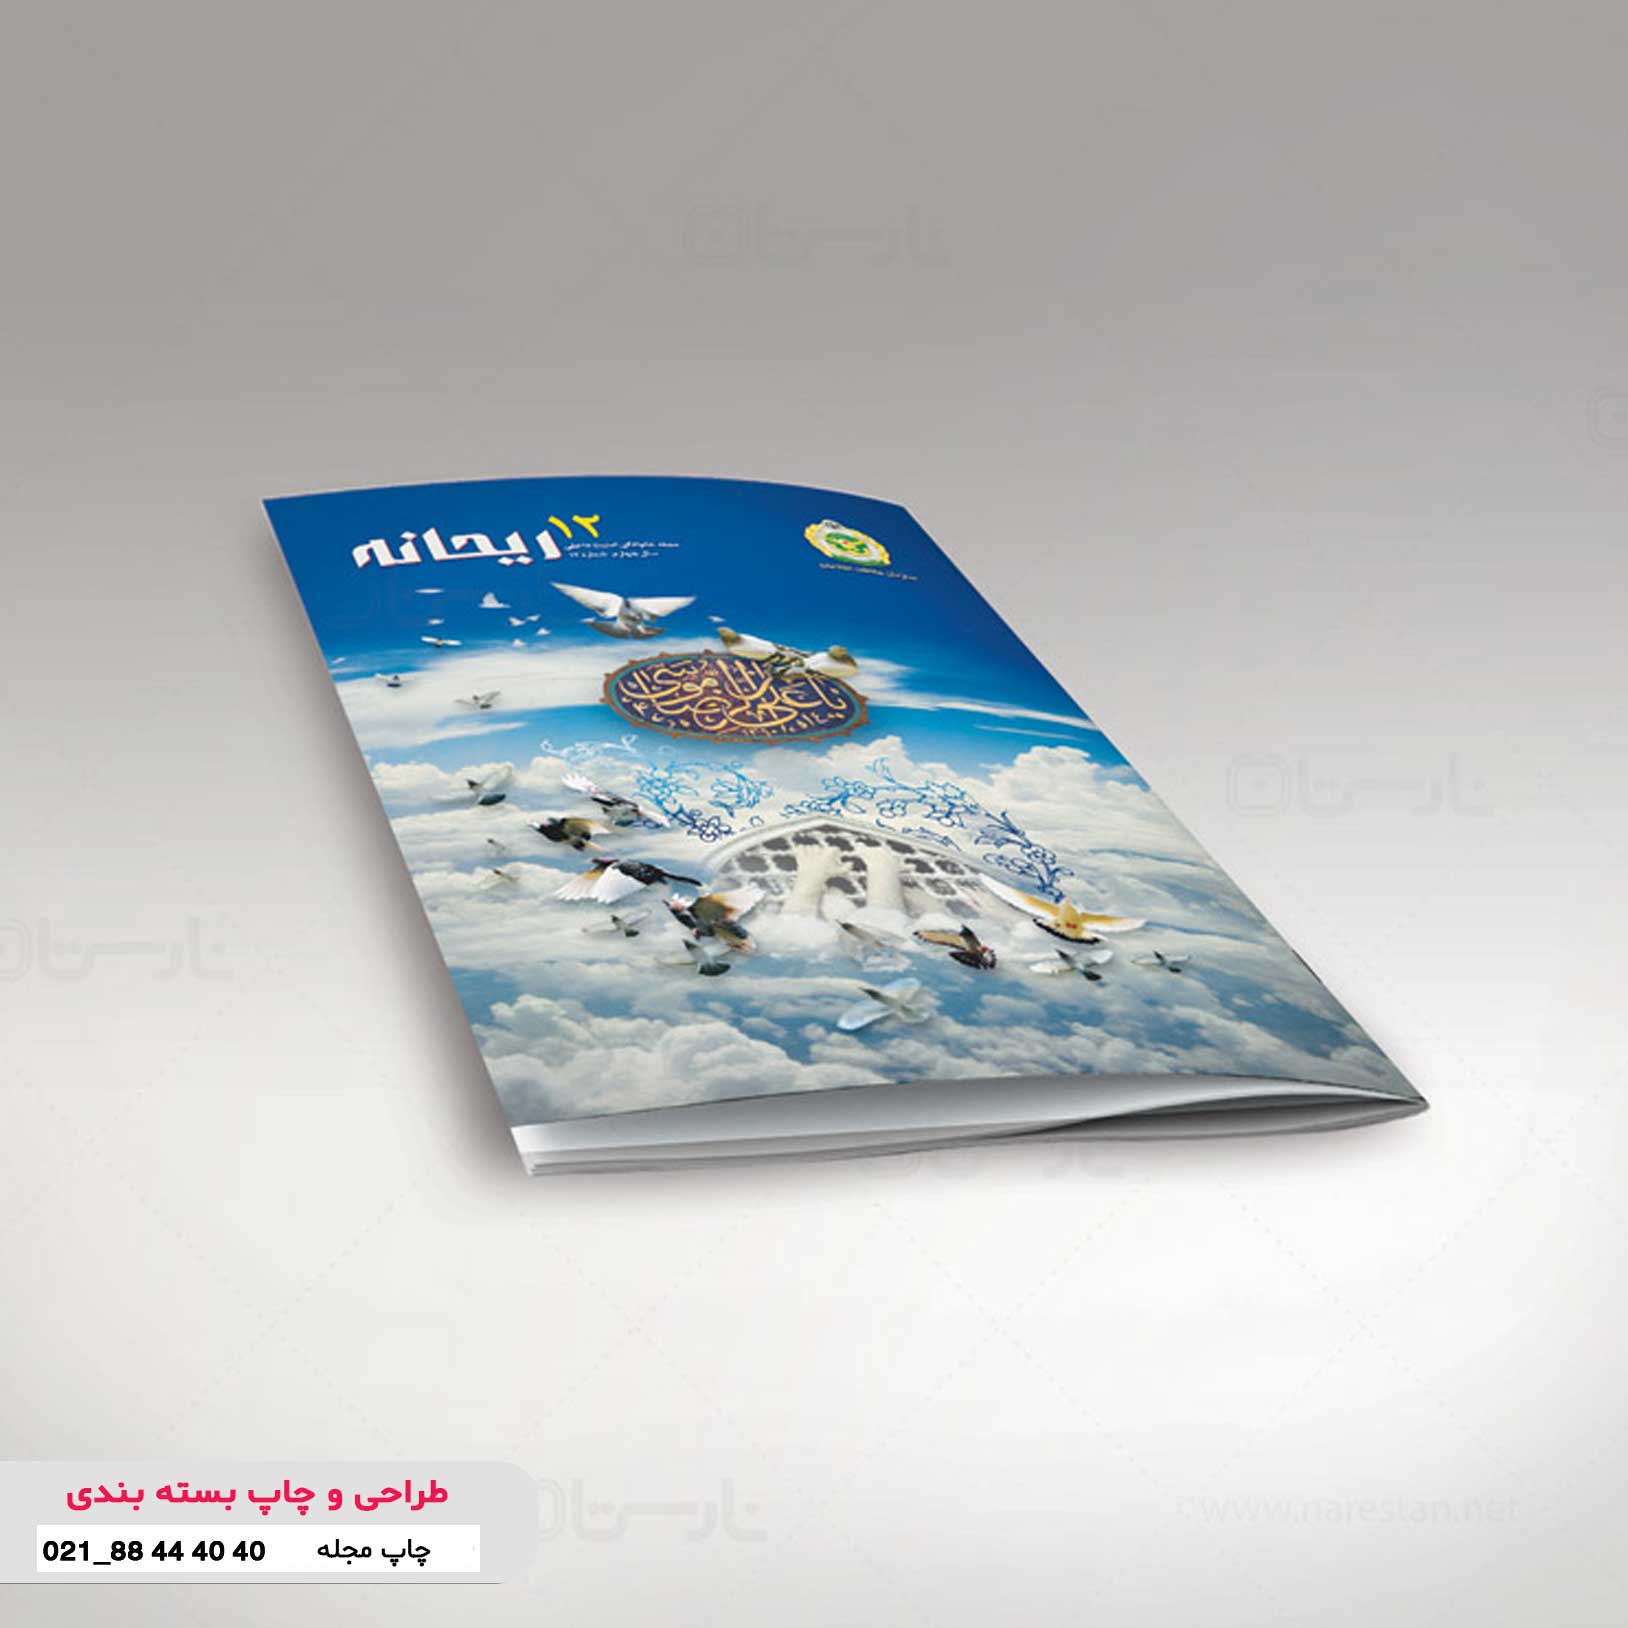 نگارش، طراحی و چاپ مجله ریحانه ارتش جمهوری اسلامی ایران